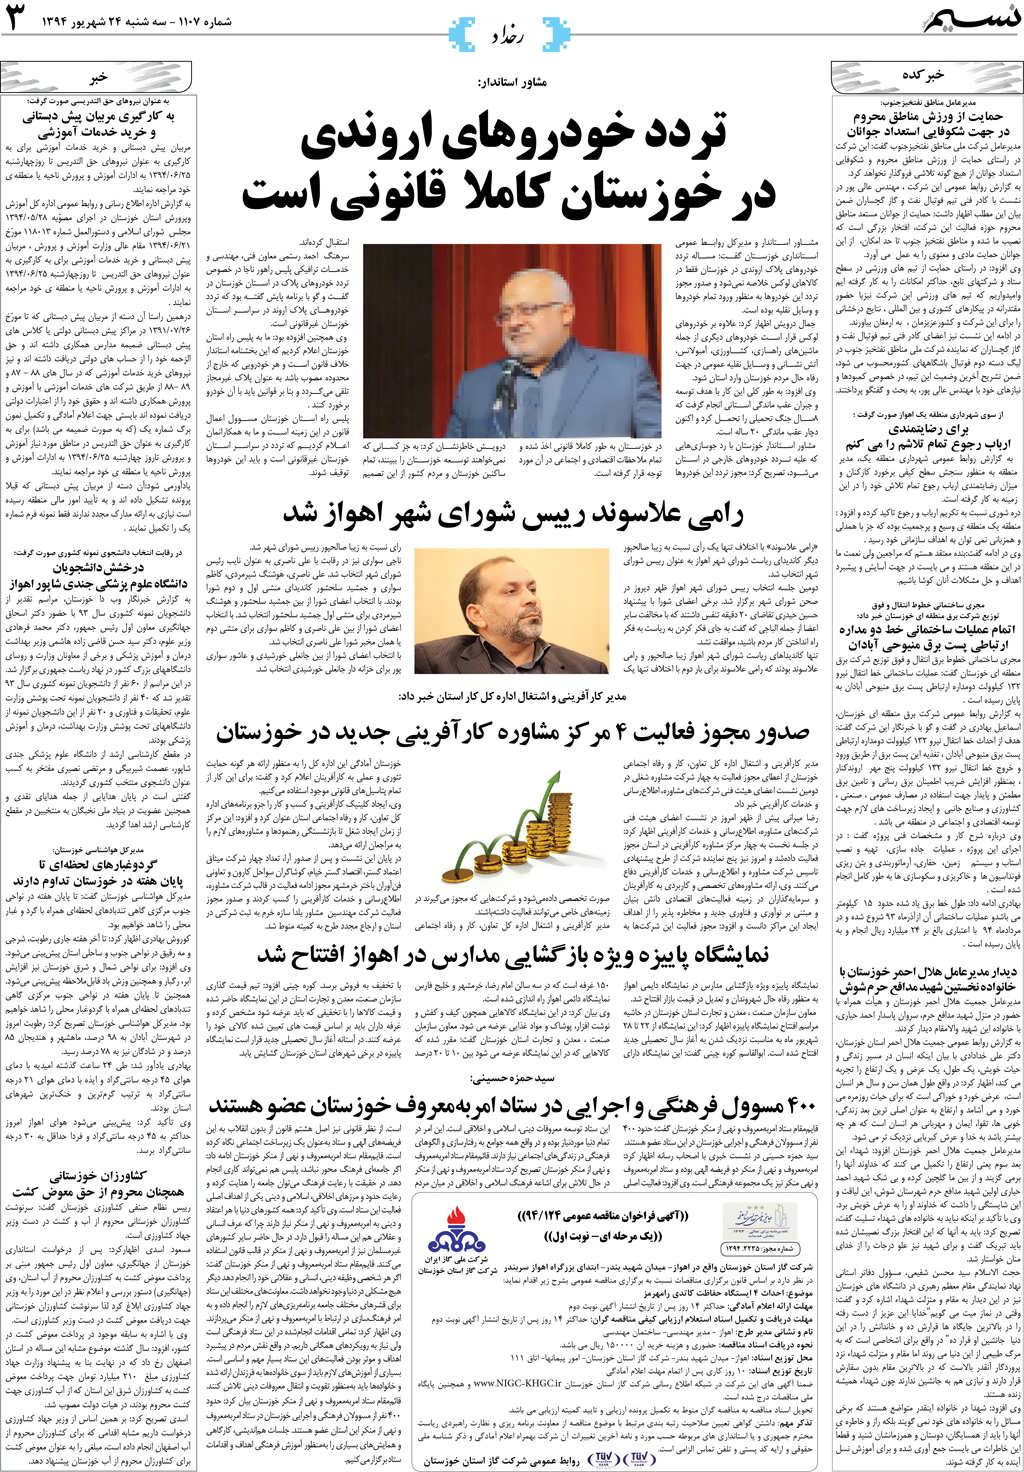 صفحه رخداد روزنامه نسیم شماره 1107